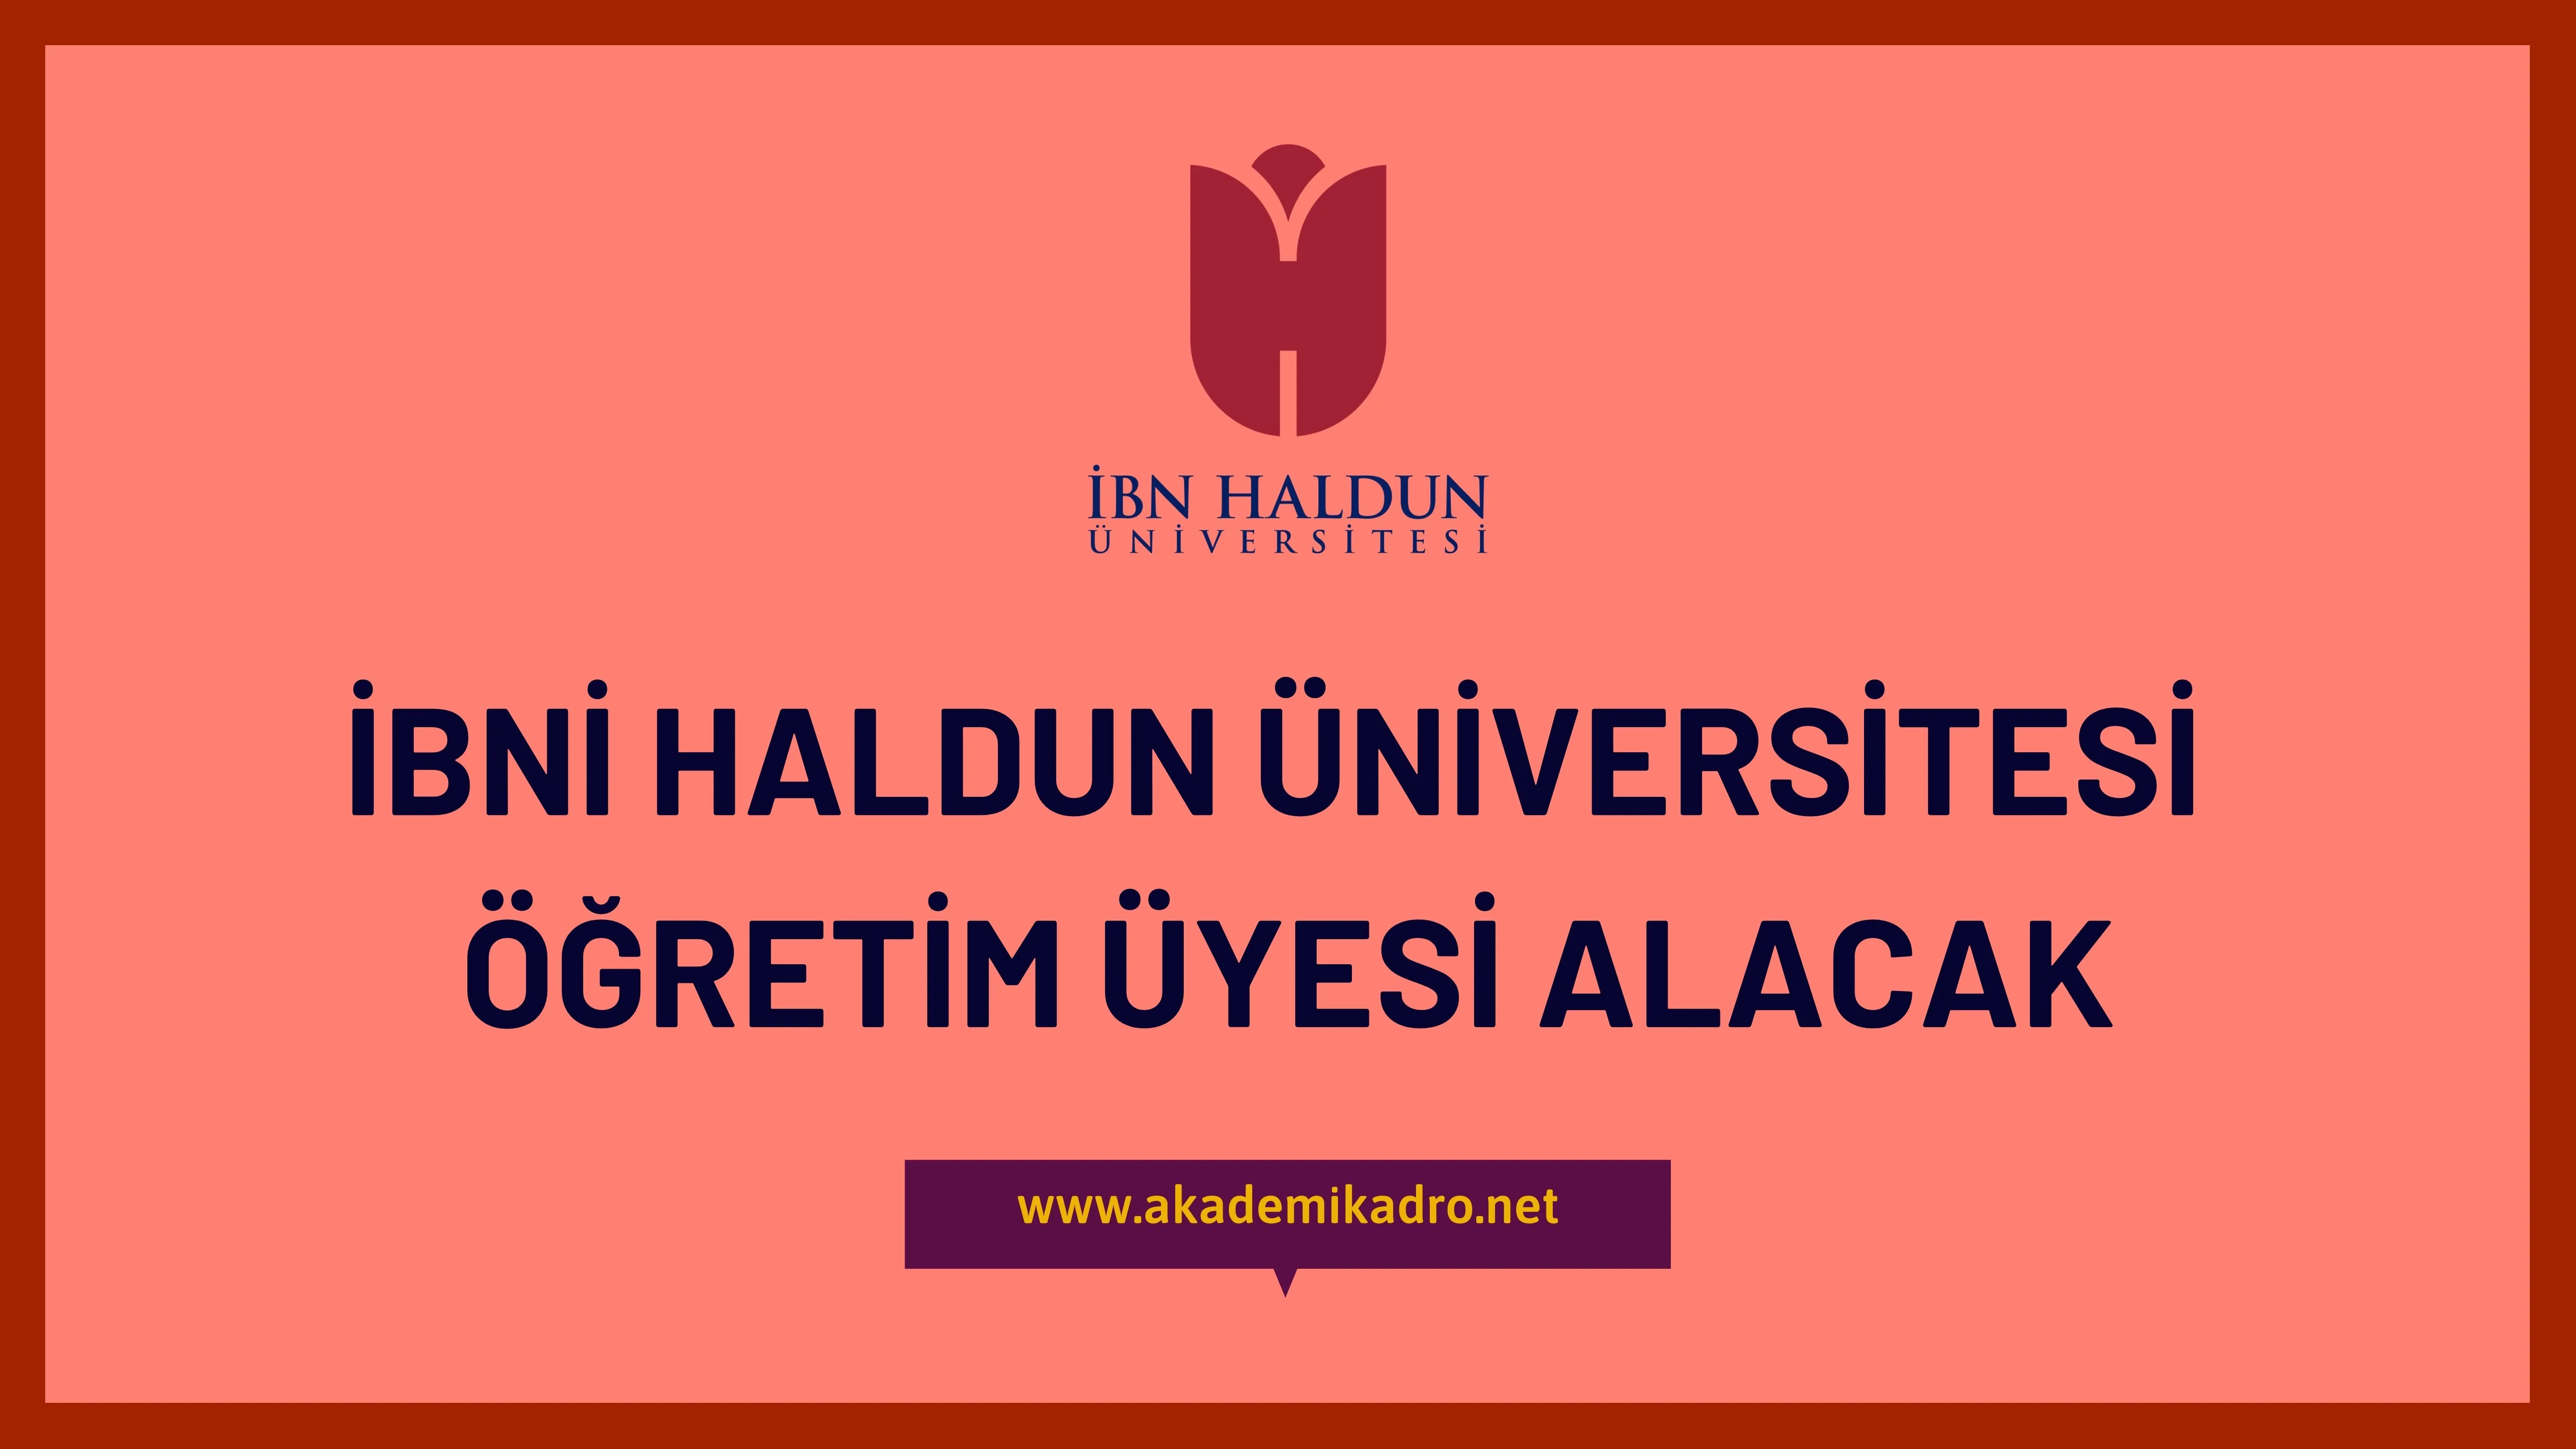 İbn Haldun Üniversitesi 3 Öğretim üyesi alacak. Son başvuru tarihi 19 Haziran 2023.